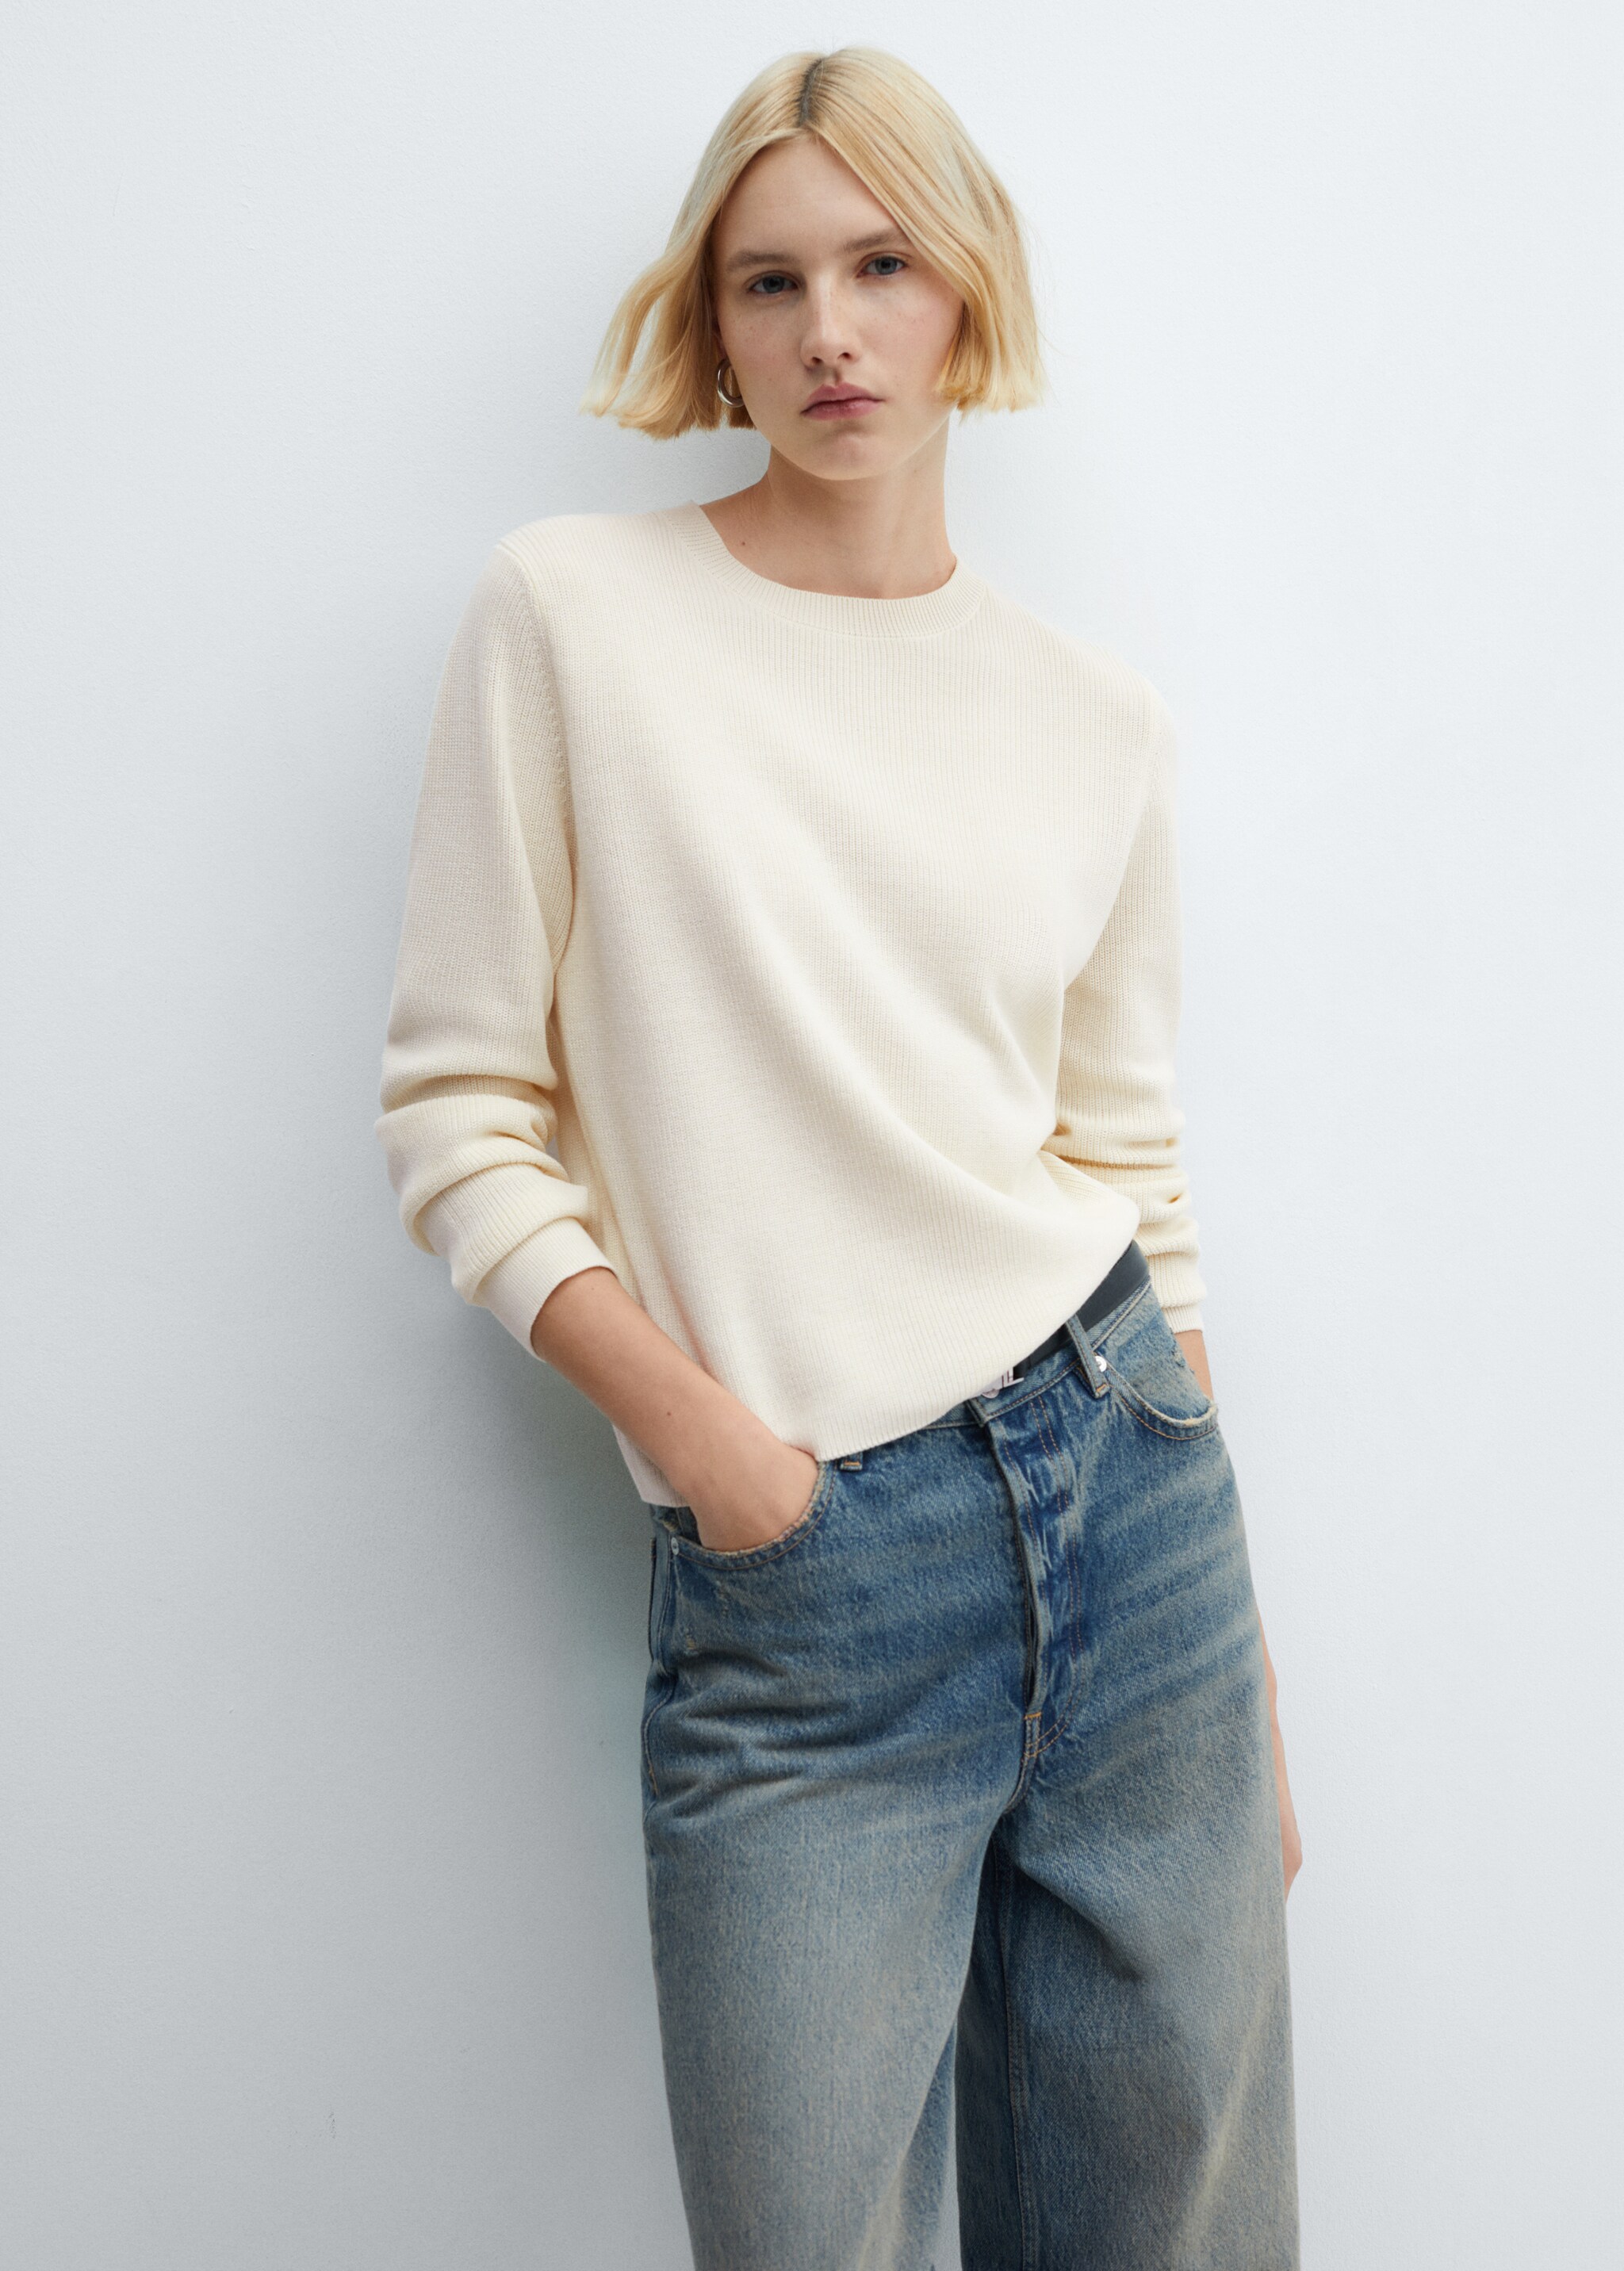 Cotton-linen round-neck knitted sweater - Medium plane